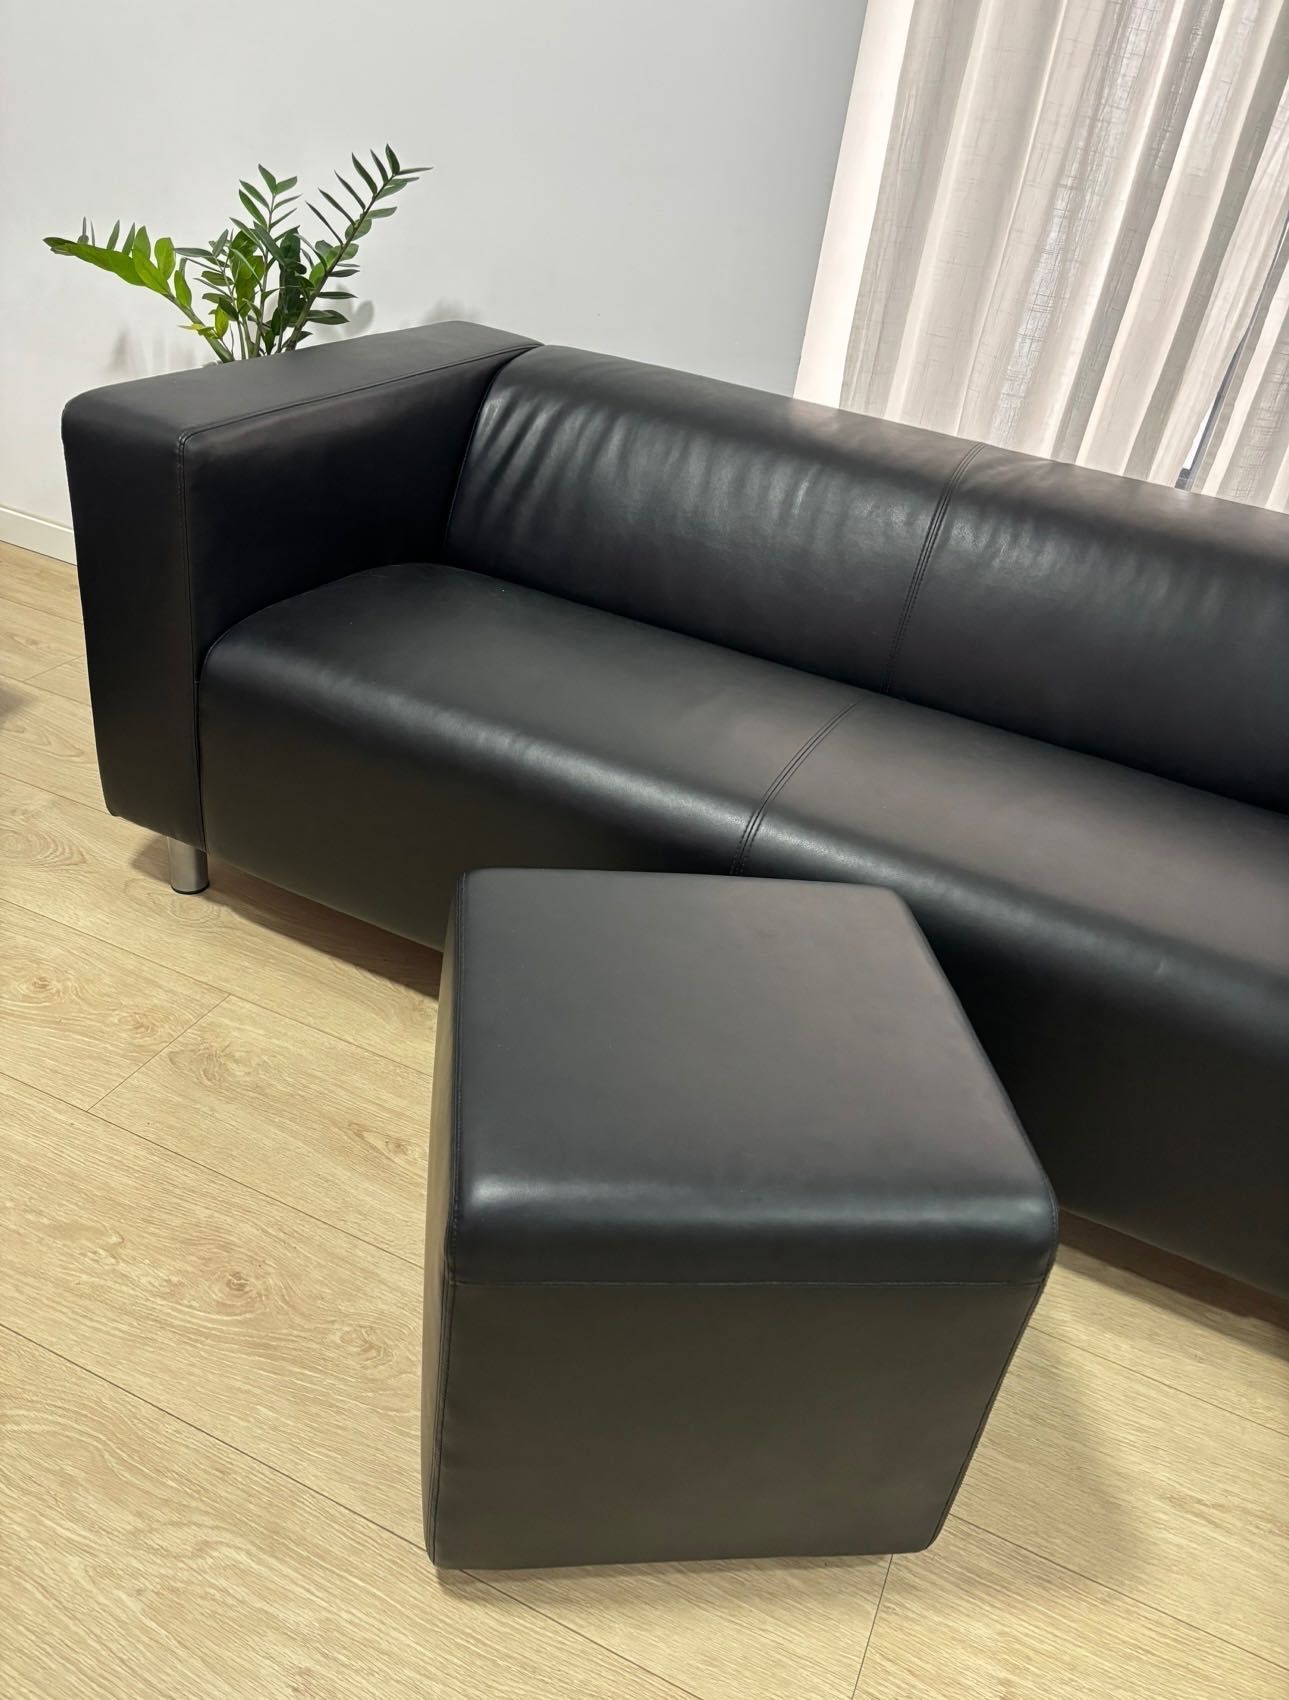 Sofa Klippan Preto - excelente estado - pele sintética